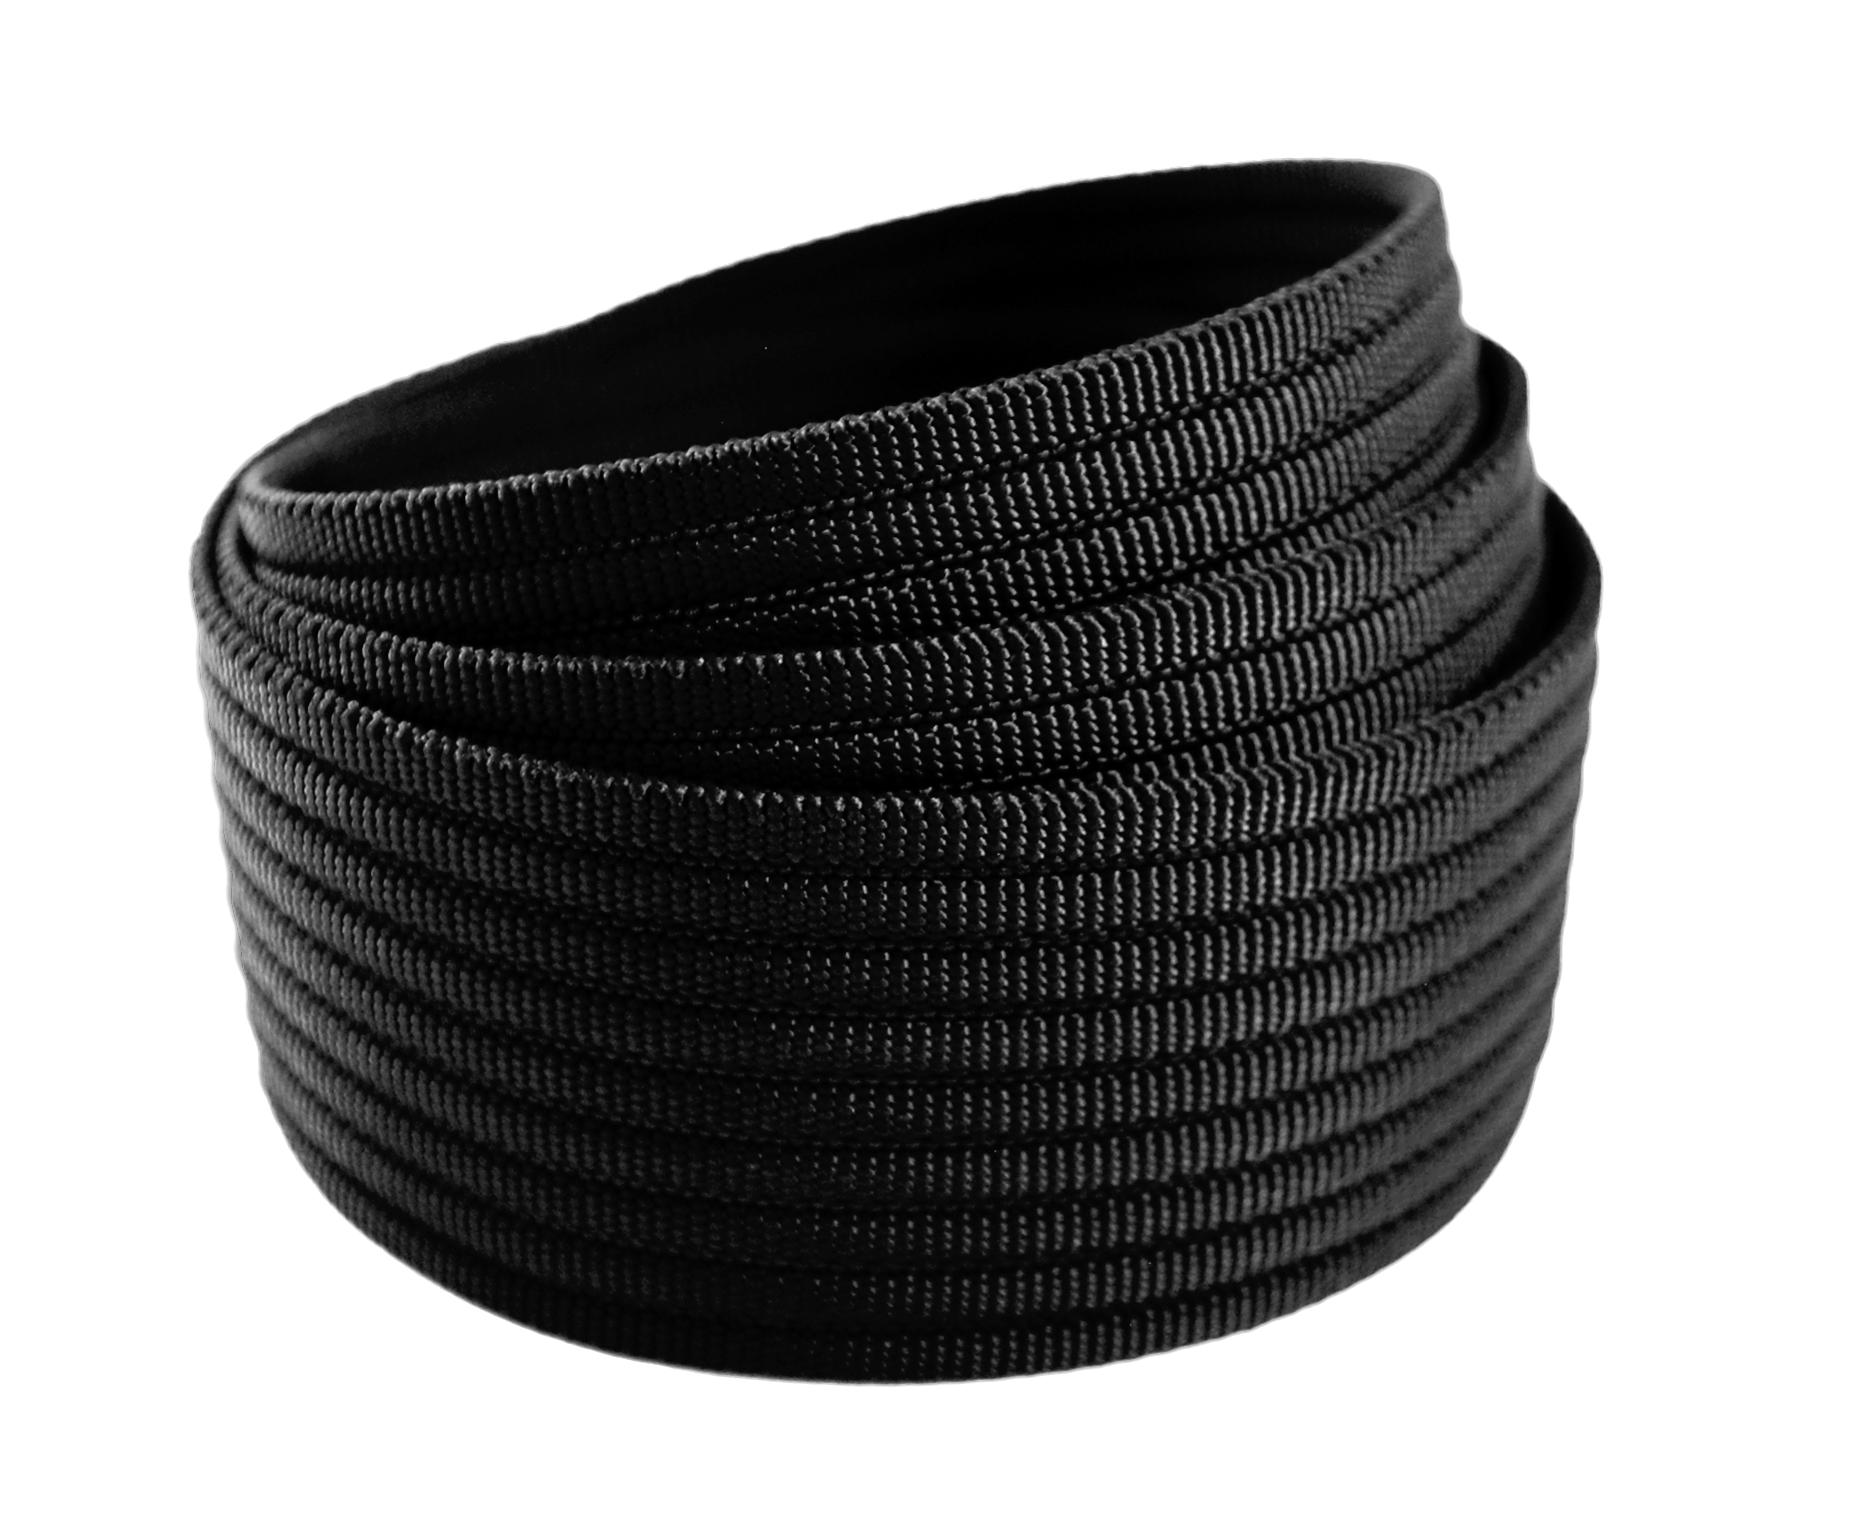 GRIPS6 ultra light, ultra simple belts